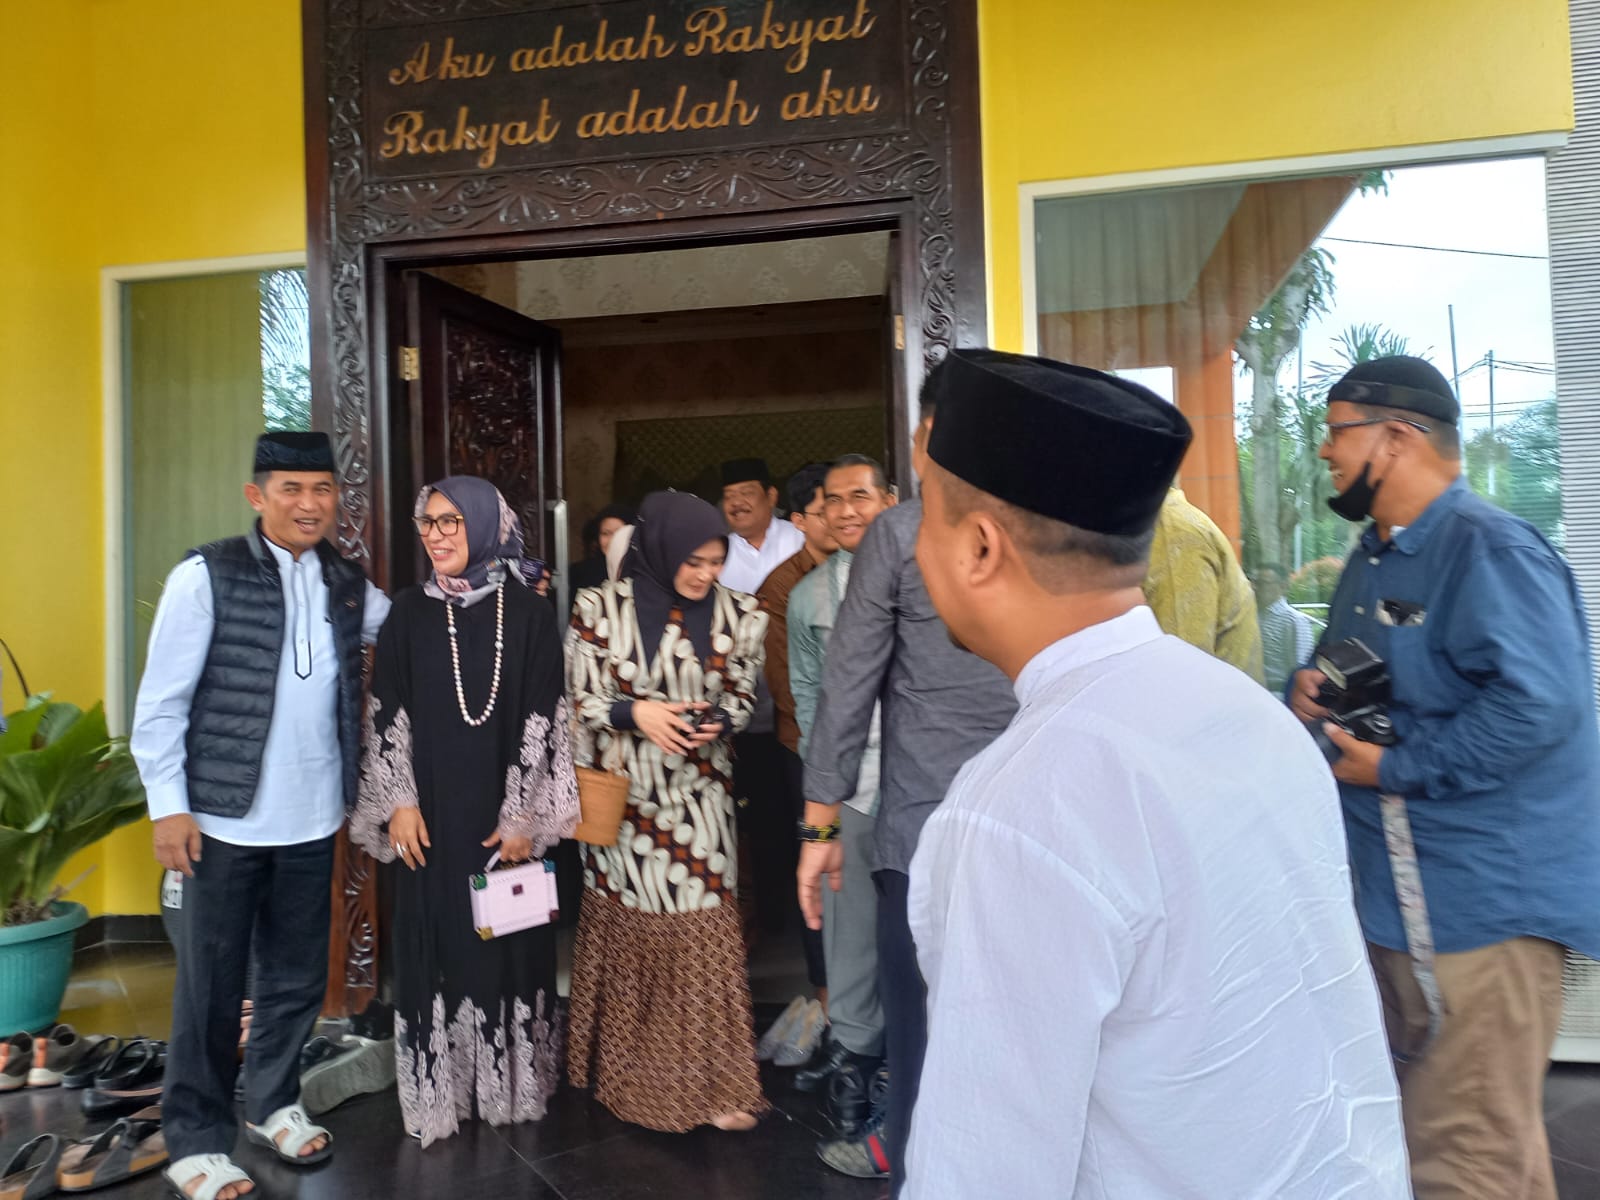 Momen Idulfitri 1444 Hijriah, DPRD Balikpapan Gelar Silaturahmi bersama Forkopimda dan Masyarakat (Foto: Ferry Cahyanti ibukotakini.com)